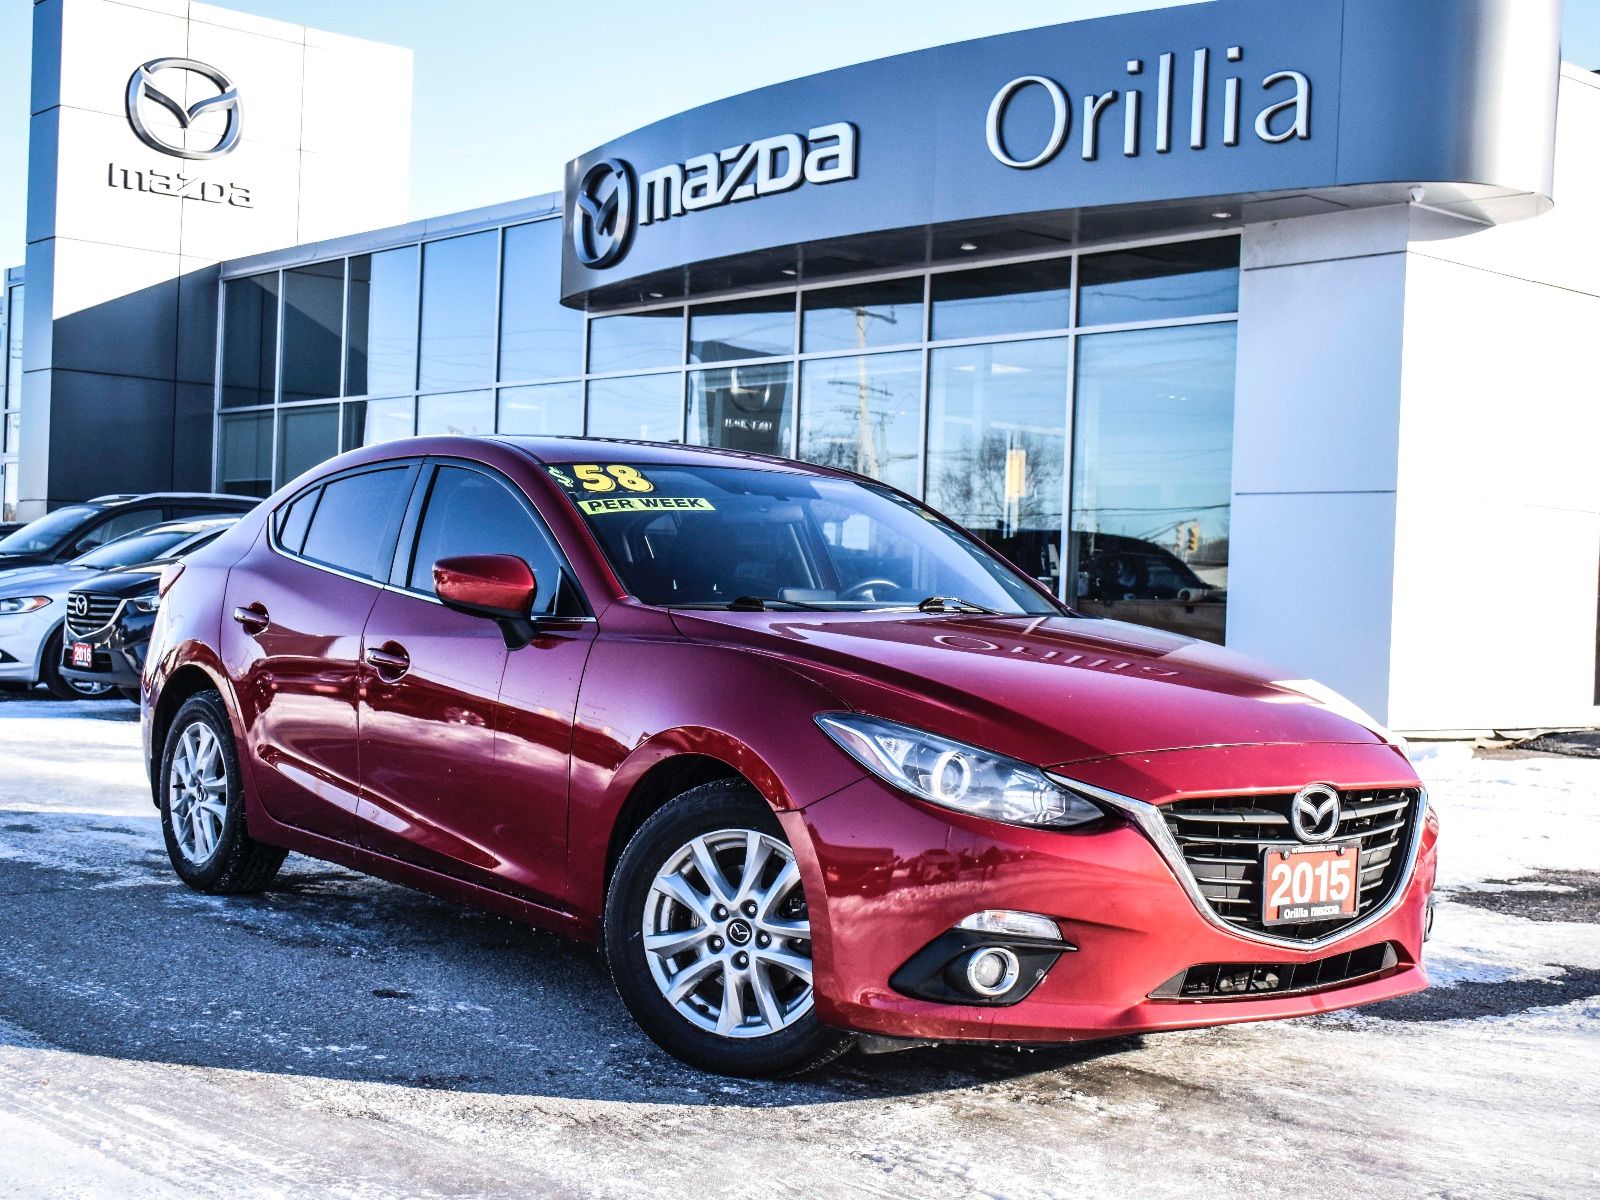 Orillia Mazda Preowned 2015 MAZDA 3 GS for Sale